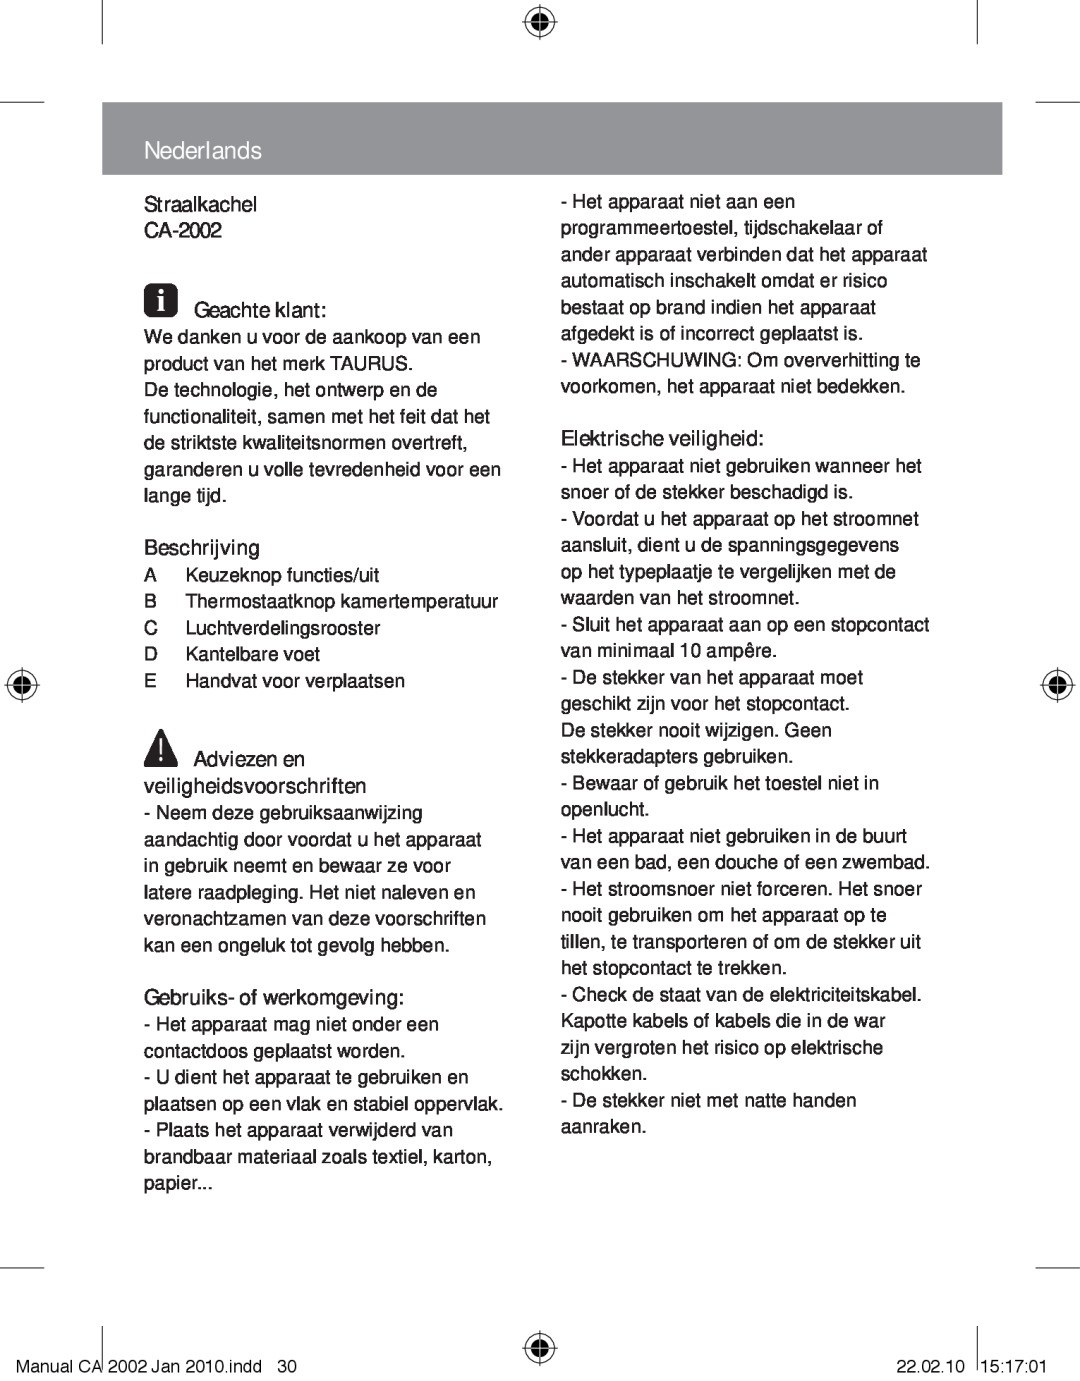 Taurus Group manual Nederlands, Straalkachel CA-2002 Geachte klant, Beschrijving, Adviezen en veiligheidsvoorschriften 